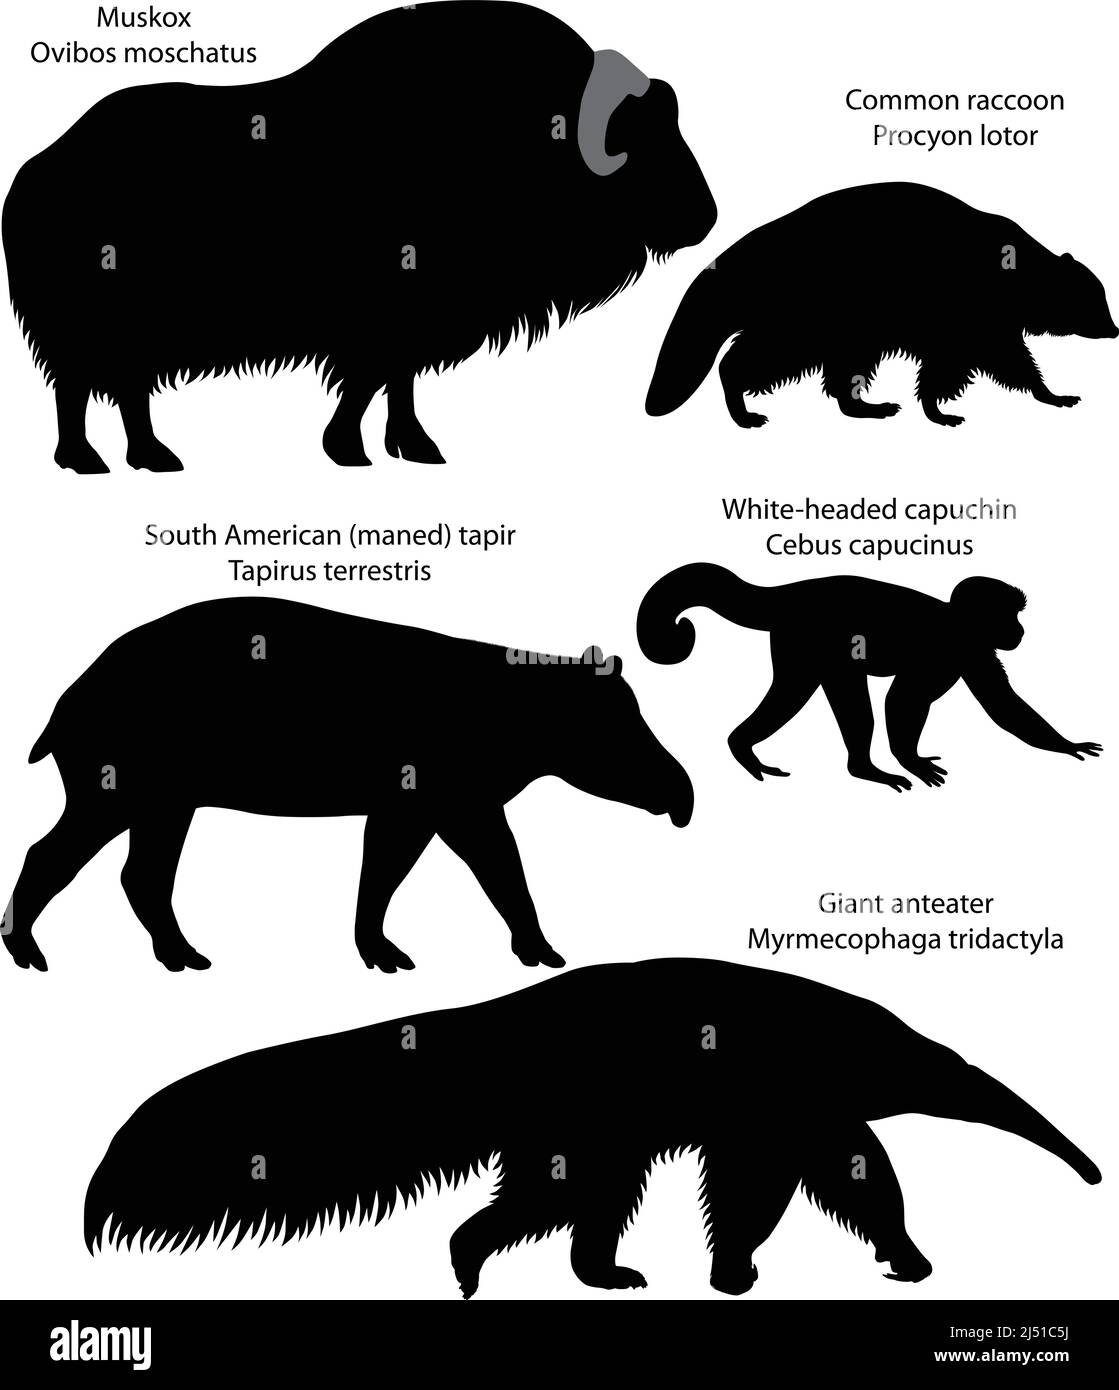 Collezione di silhouette di animali del Nord e del Sud America: Muskox, raccoon comune, tapir sudamericano, cappuccino a testa bianca, antenato gigante Illustrazione Vettoriale